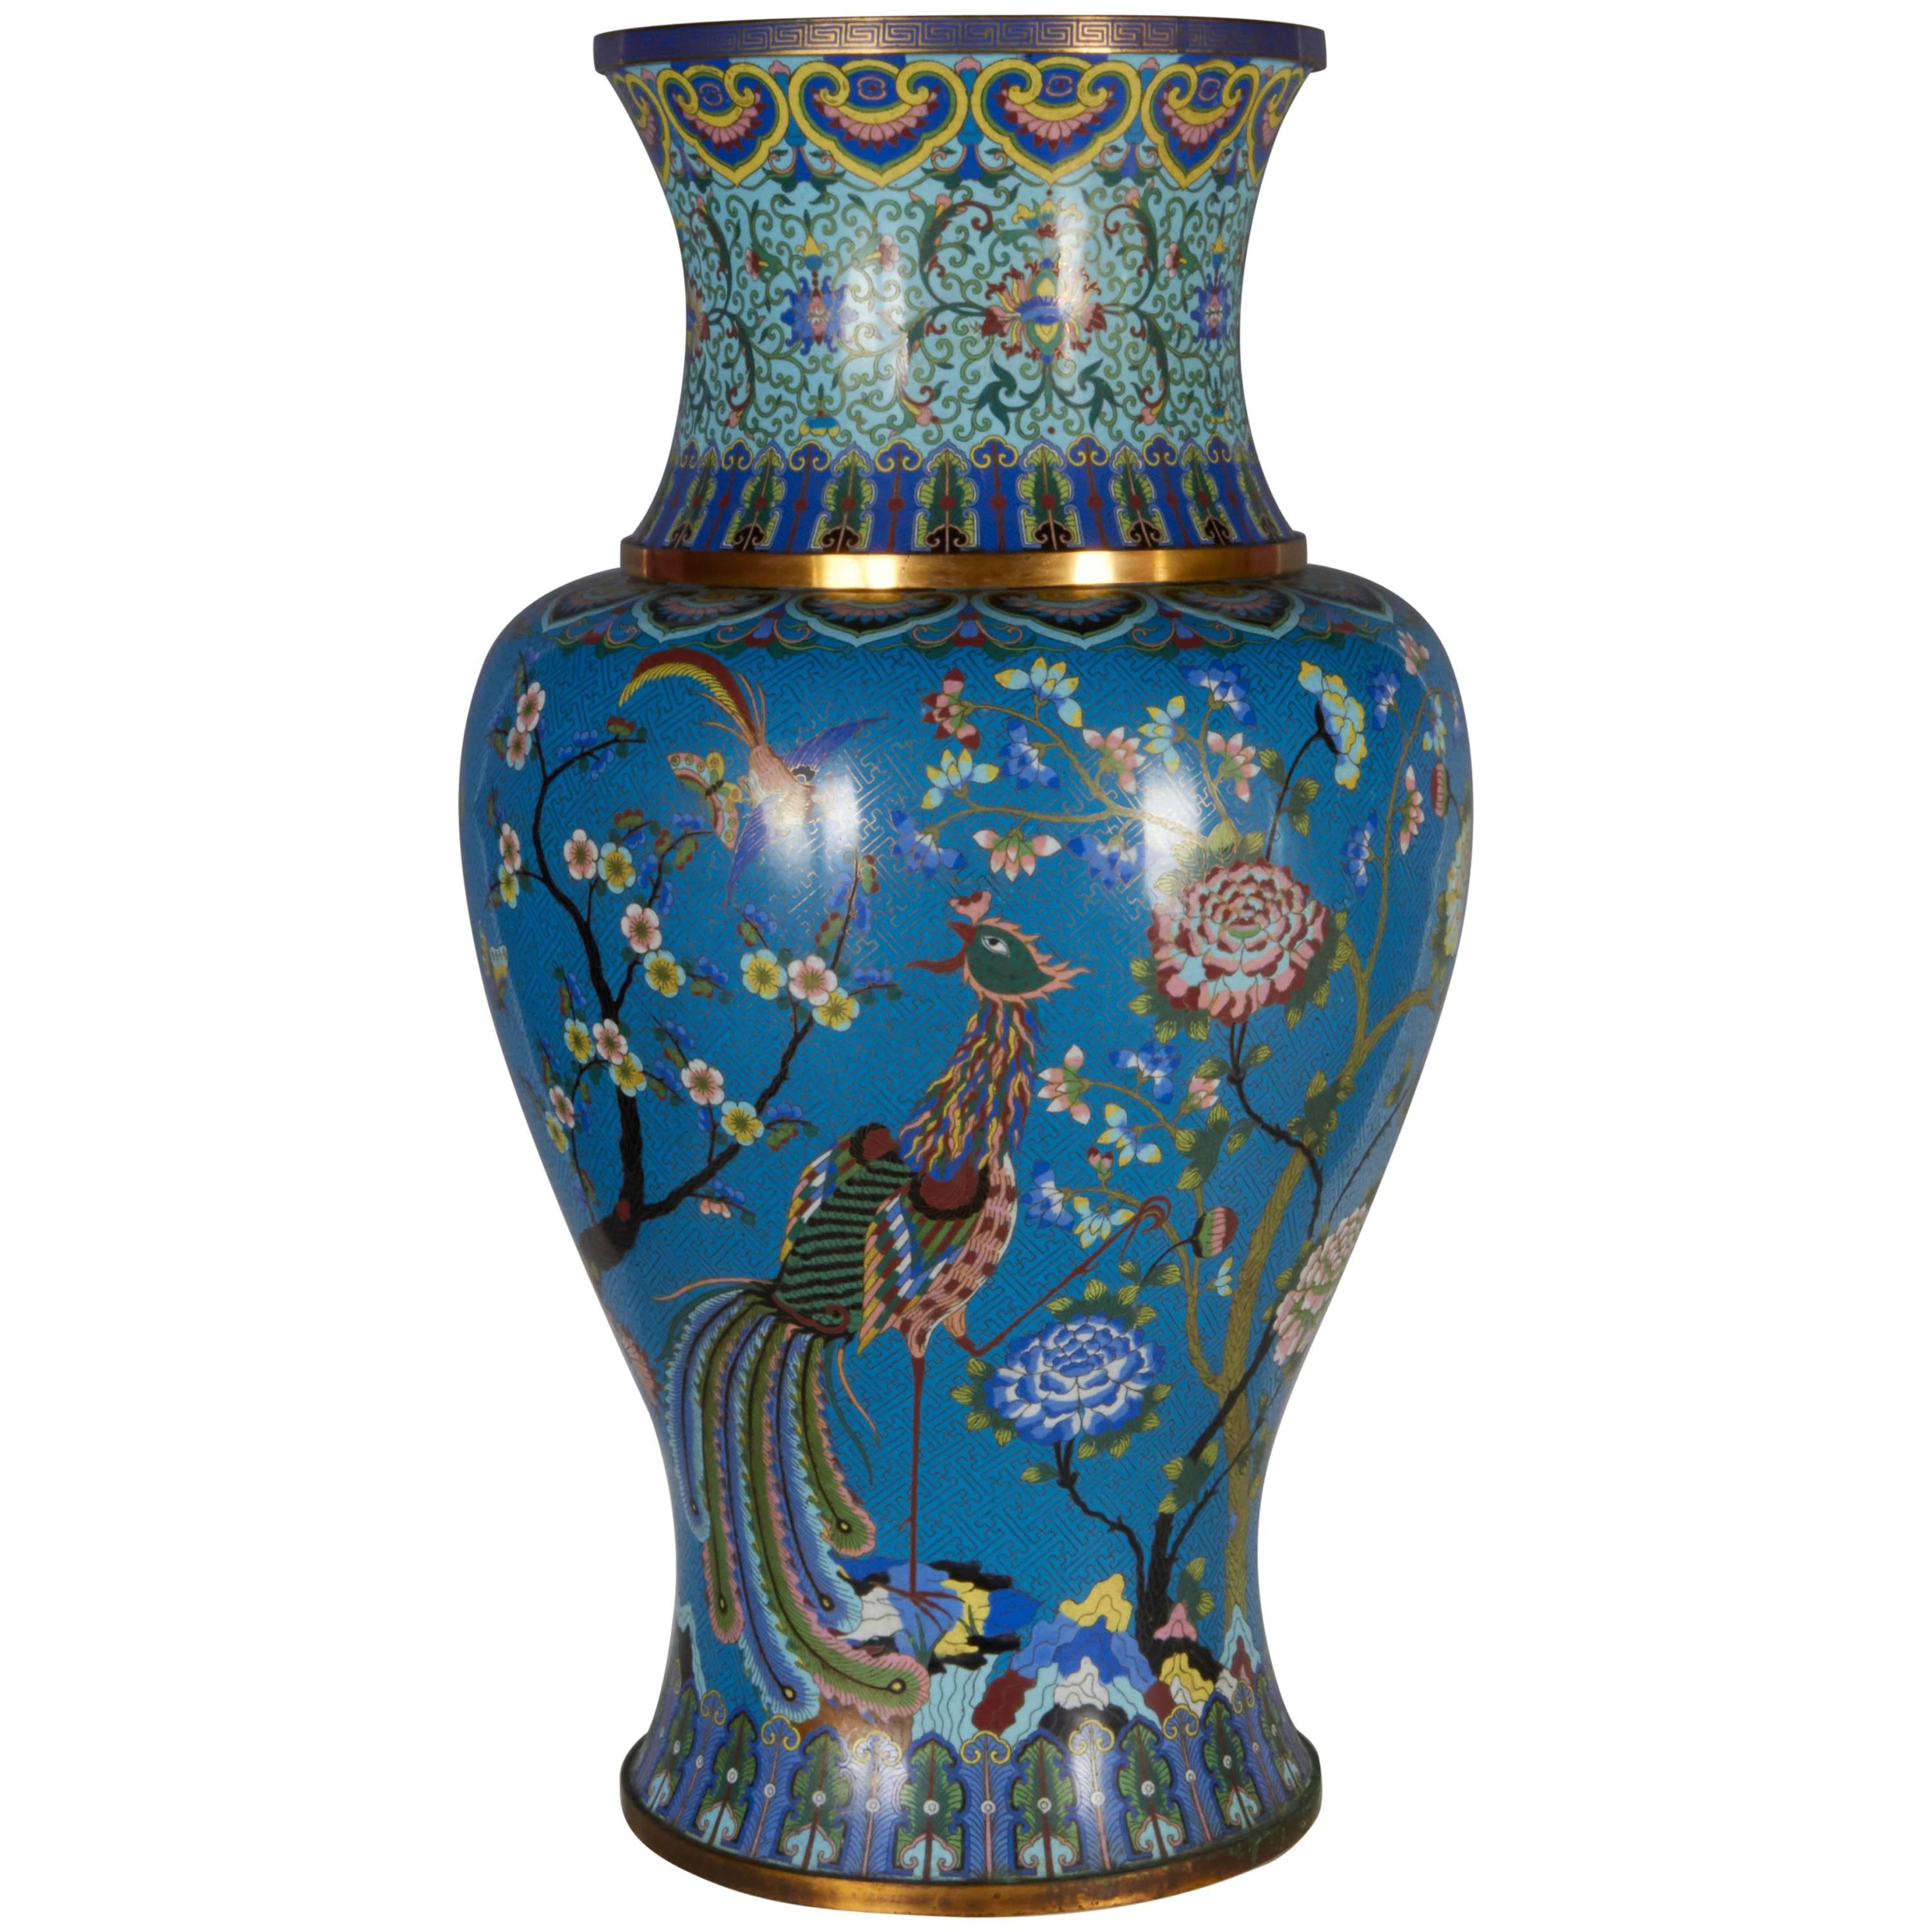 Massive chinesische Cloisonné-Vase mit Phoenix, Magnolie, Lotus und Chrysanthemen